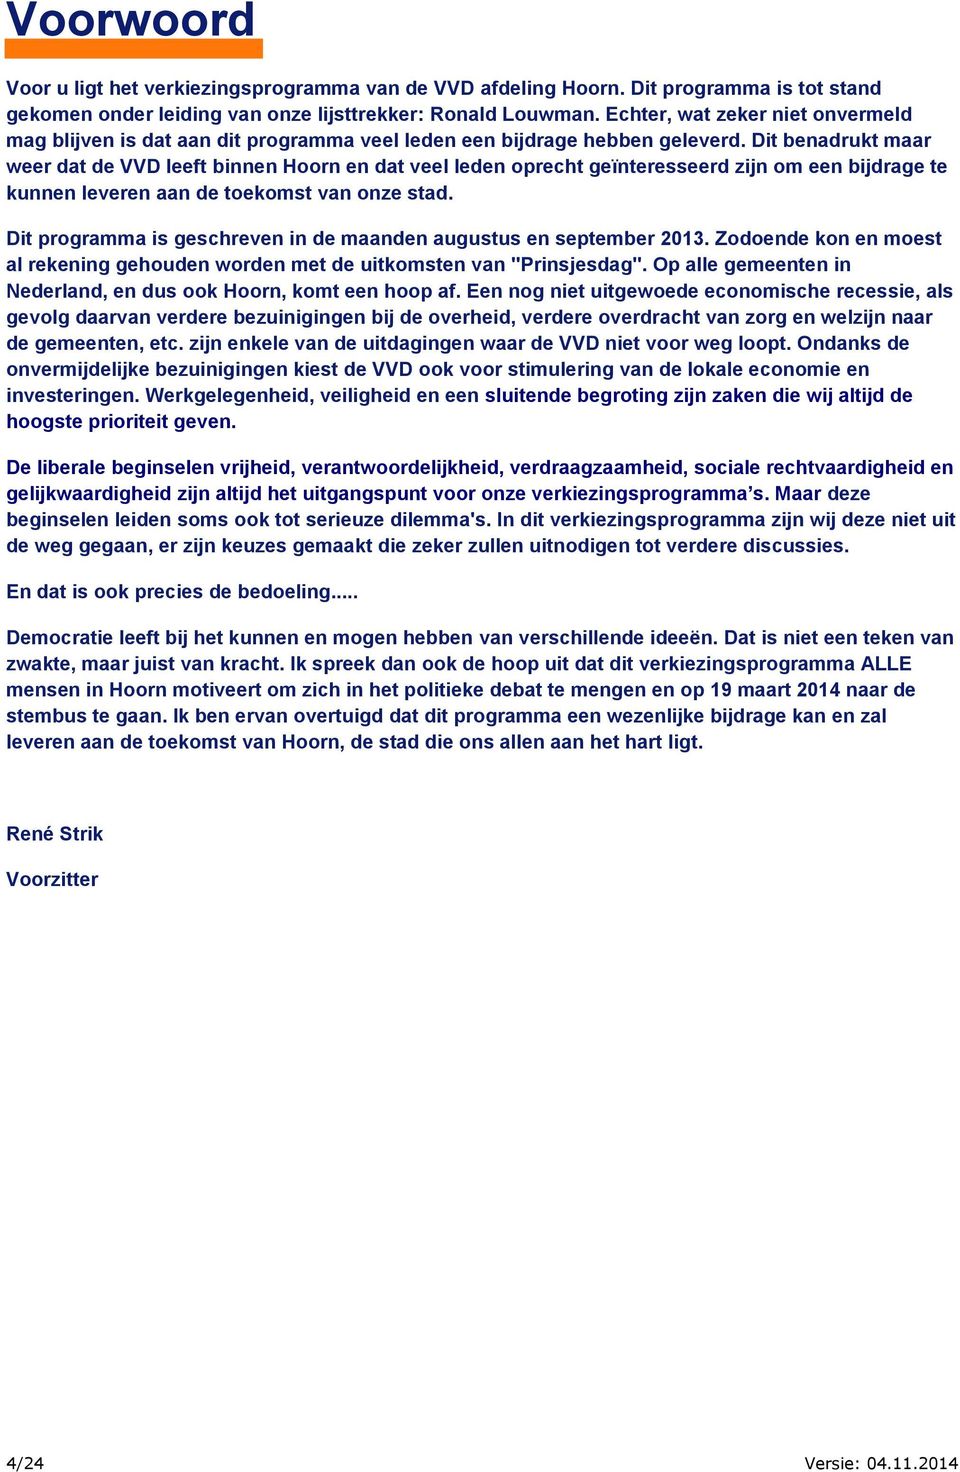 Dit benadrukt maar weer dat de VVD leeft binnen Hoorn en dat veel leden oprecht geïnteresseerd zijn om een bijdrage te kunnen leveren aan de toekomst van onze stad.